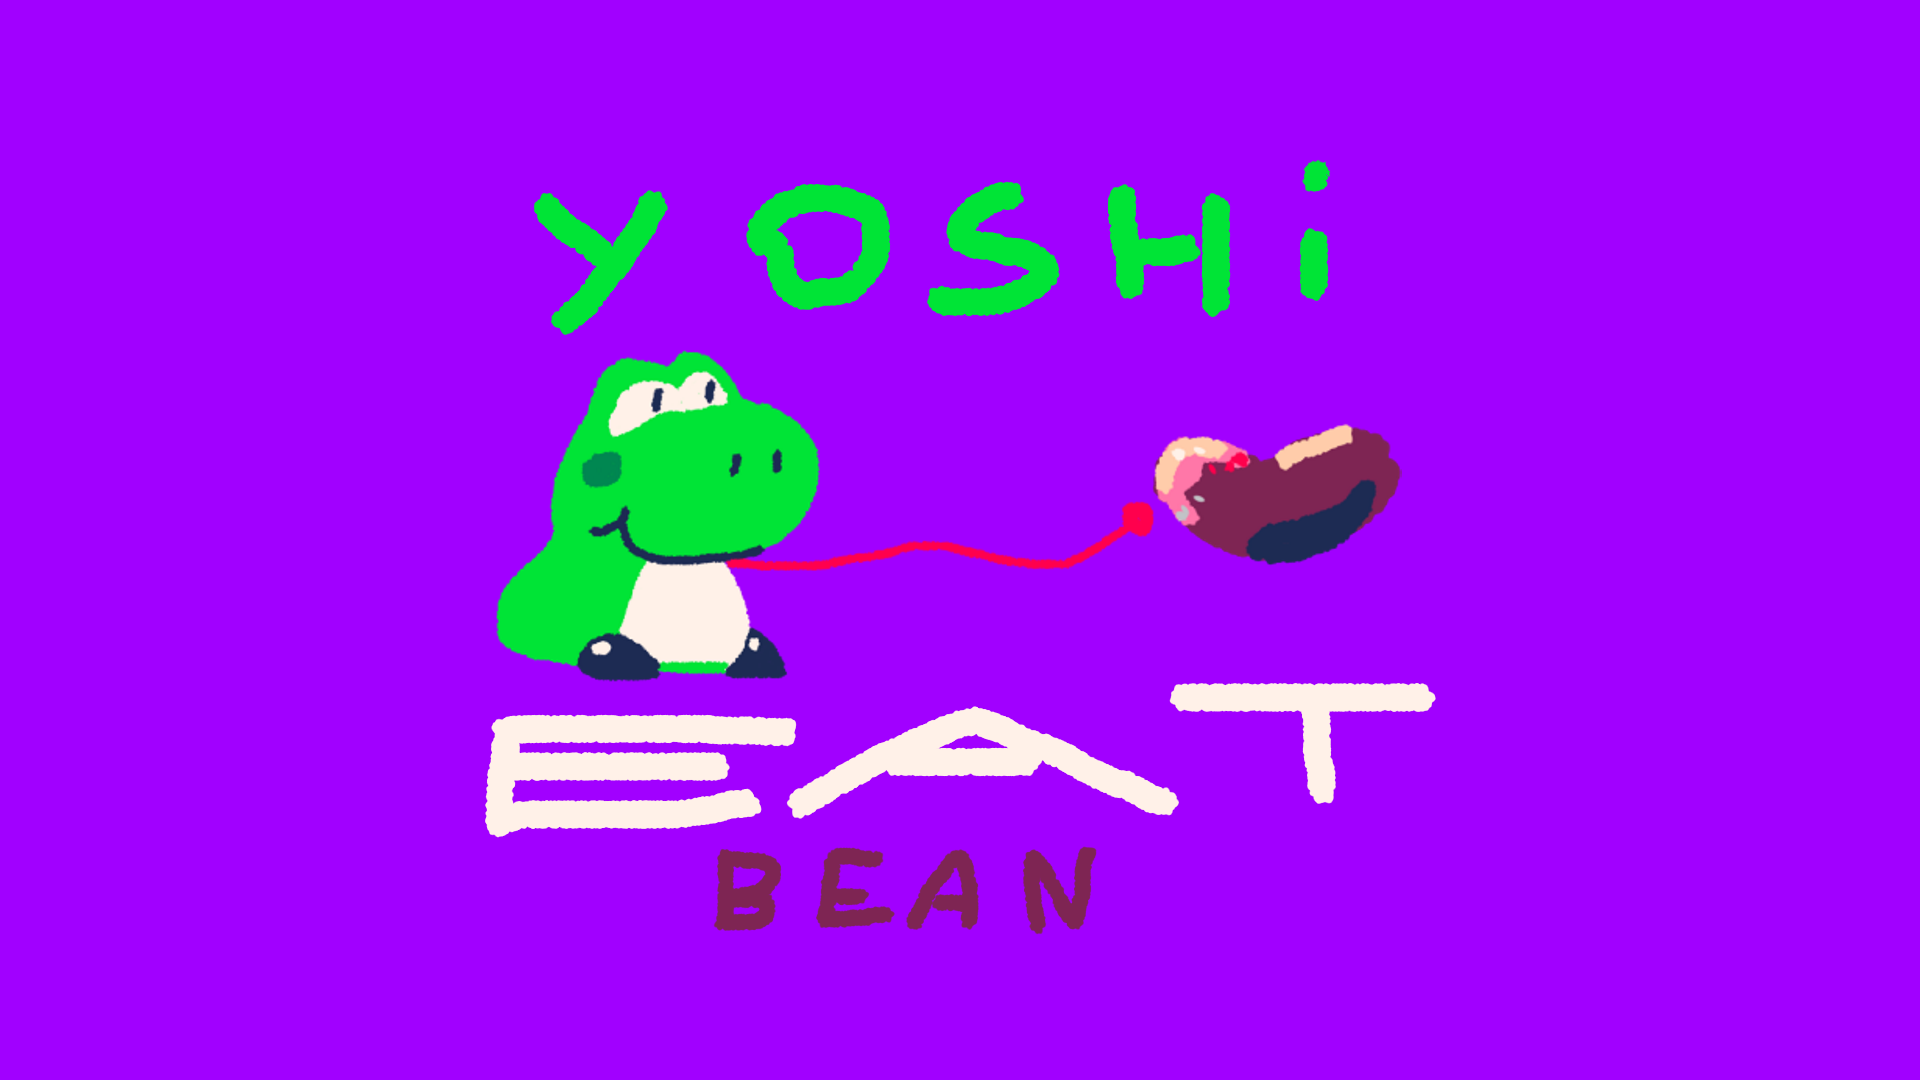 Yoshi eat bean